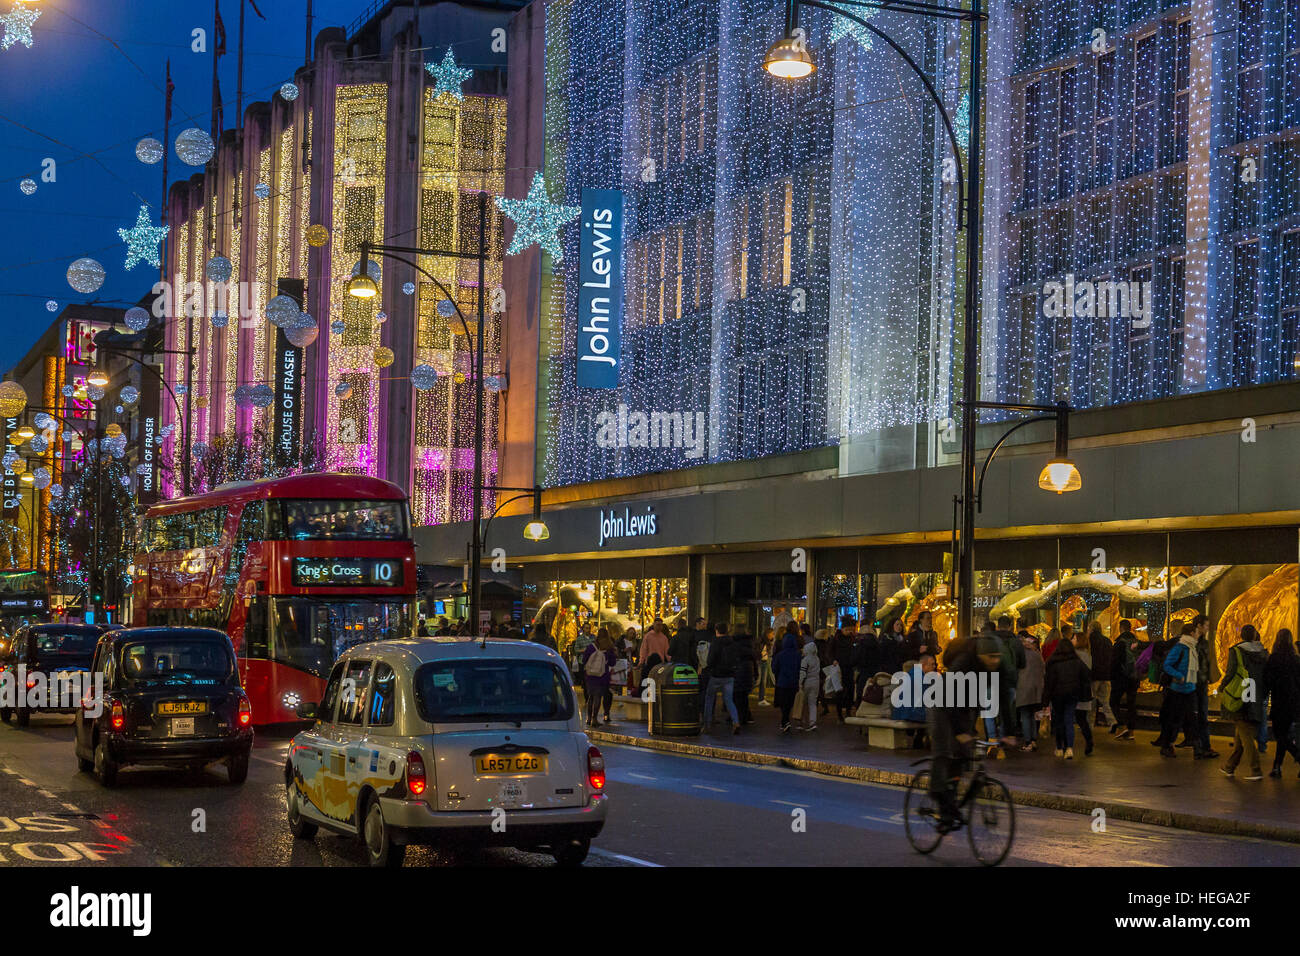 All'esterno del grande magazzino John Lewis di Oxford Street a Londra, nel periodo di Natale, Londra, Regno Unito, si trovano moltitudini di acquirenti natalizi Foto Stock